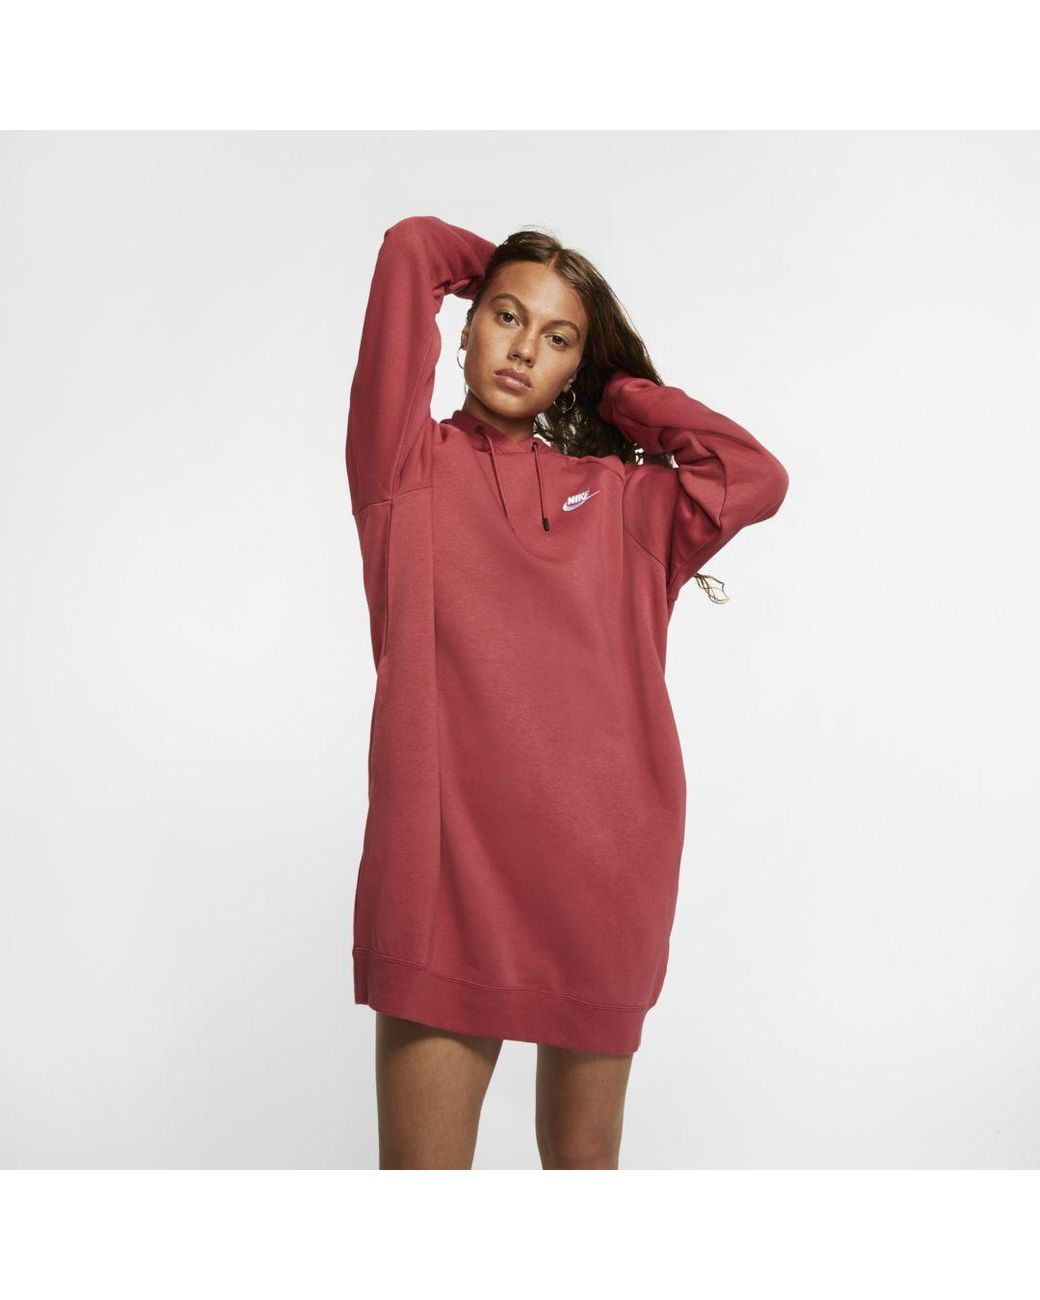 Nike Sportswear Essential Fleece Dress in Red | Lyst